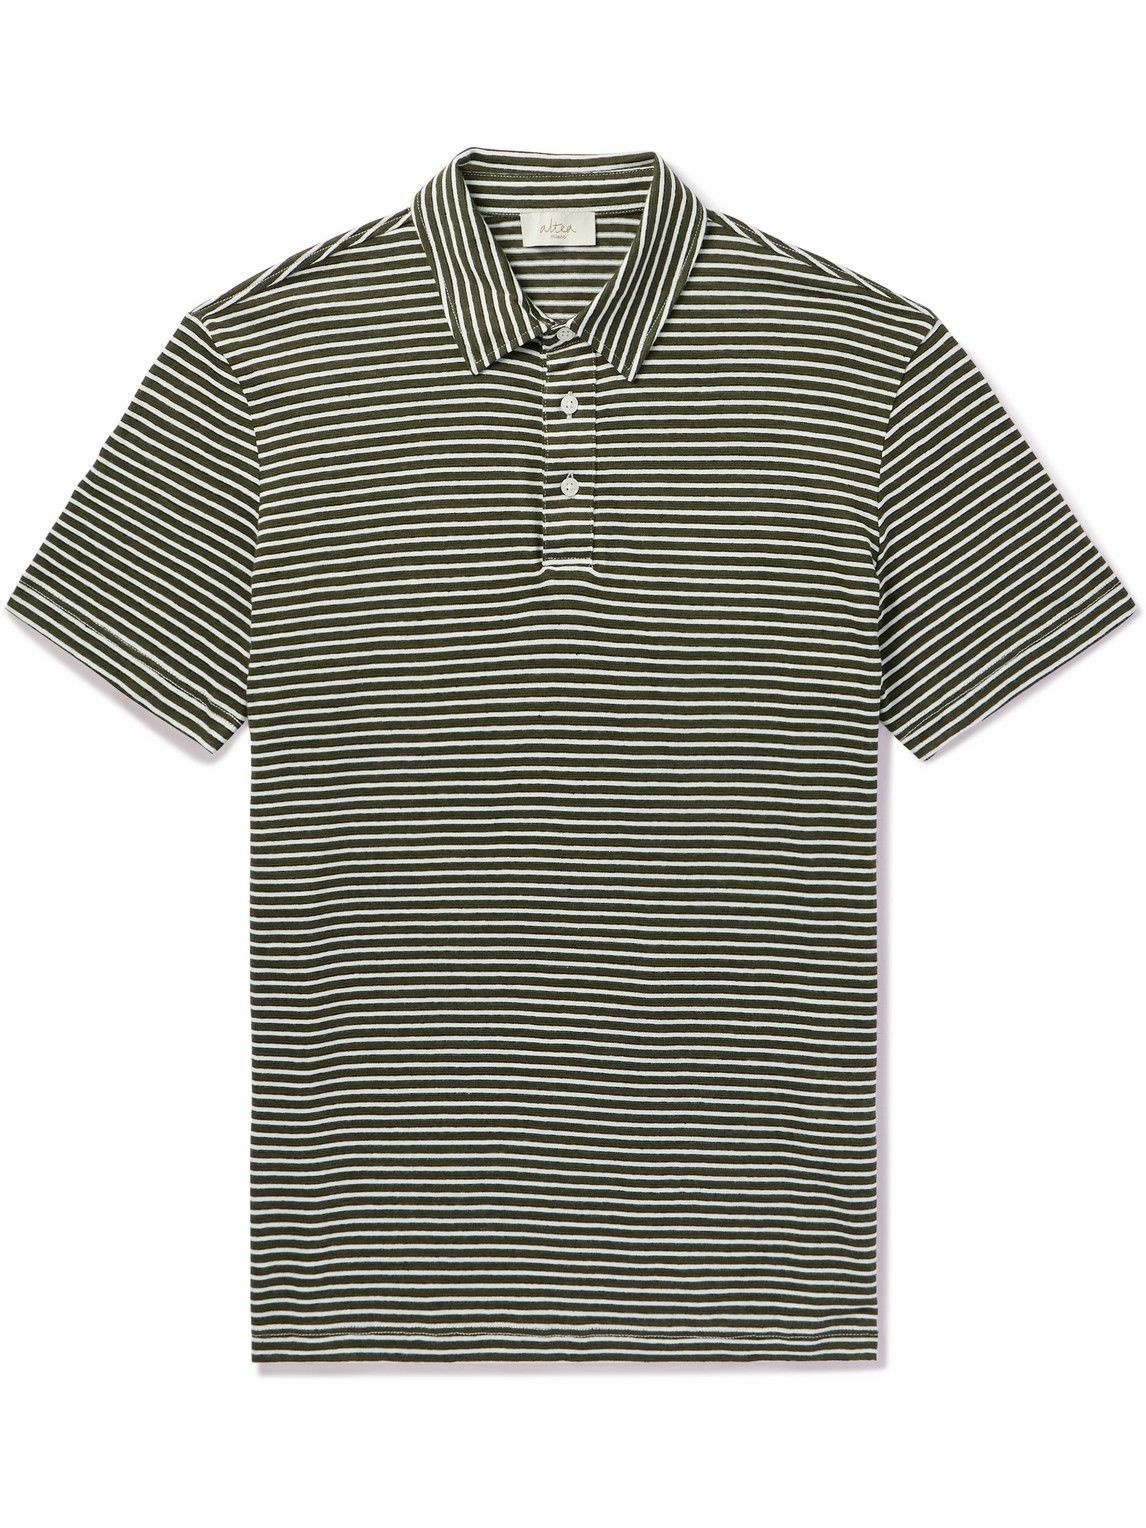 Altea - Smith Striped Linen and Cotton-Blend Polo Shirt - Blue Altea